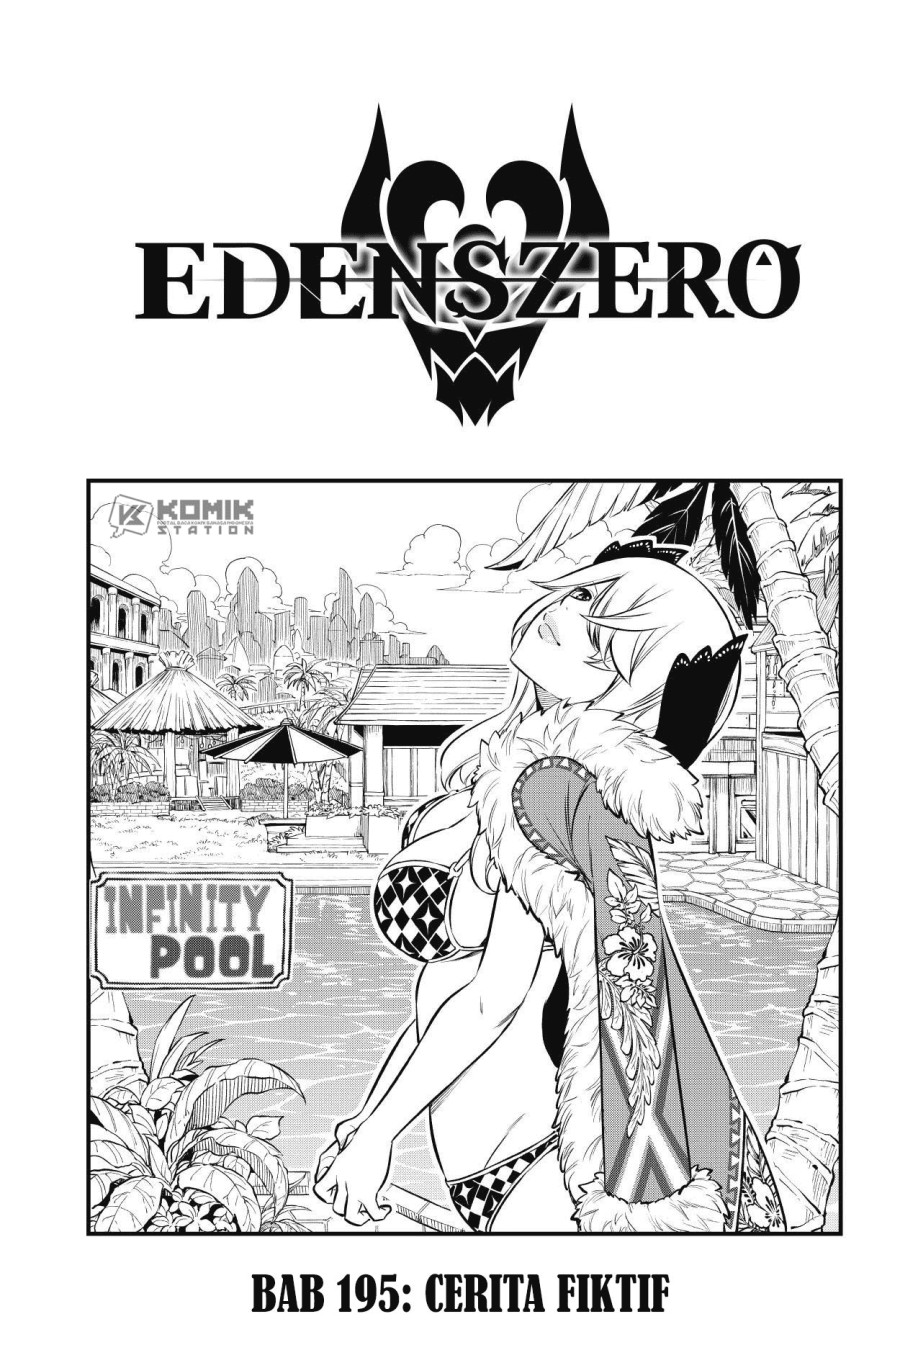 Eden’s Zero Chapter 195